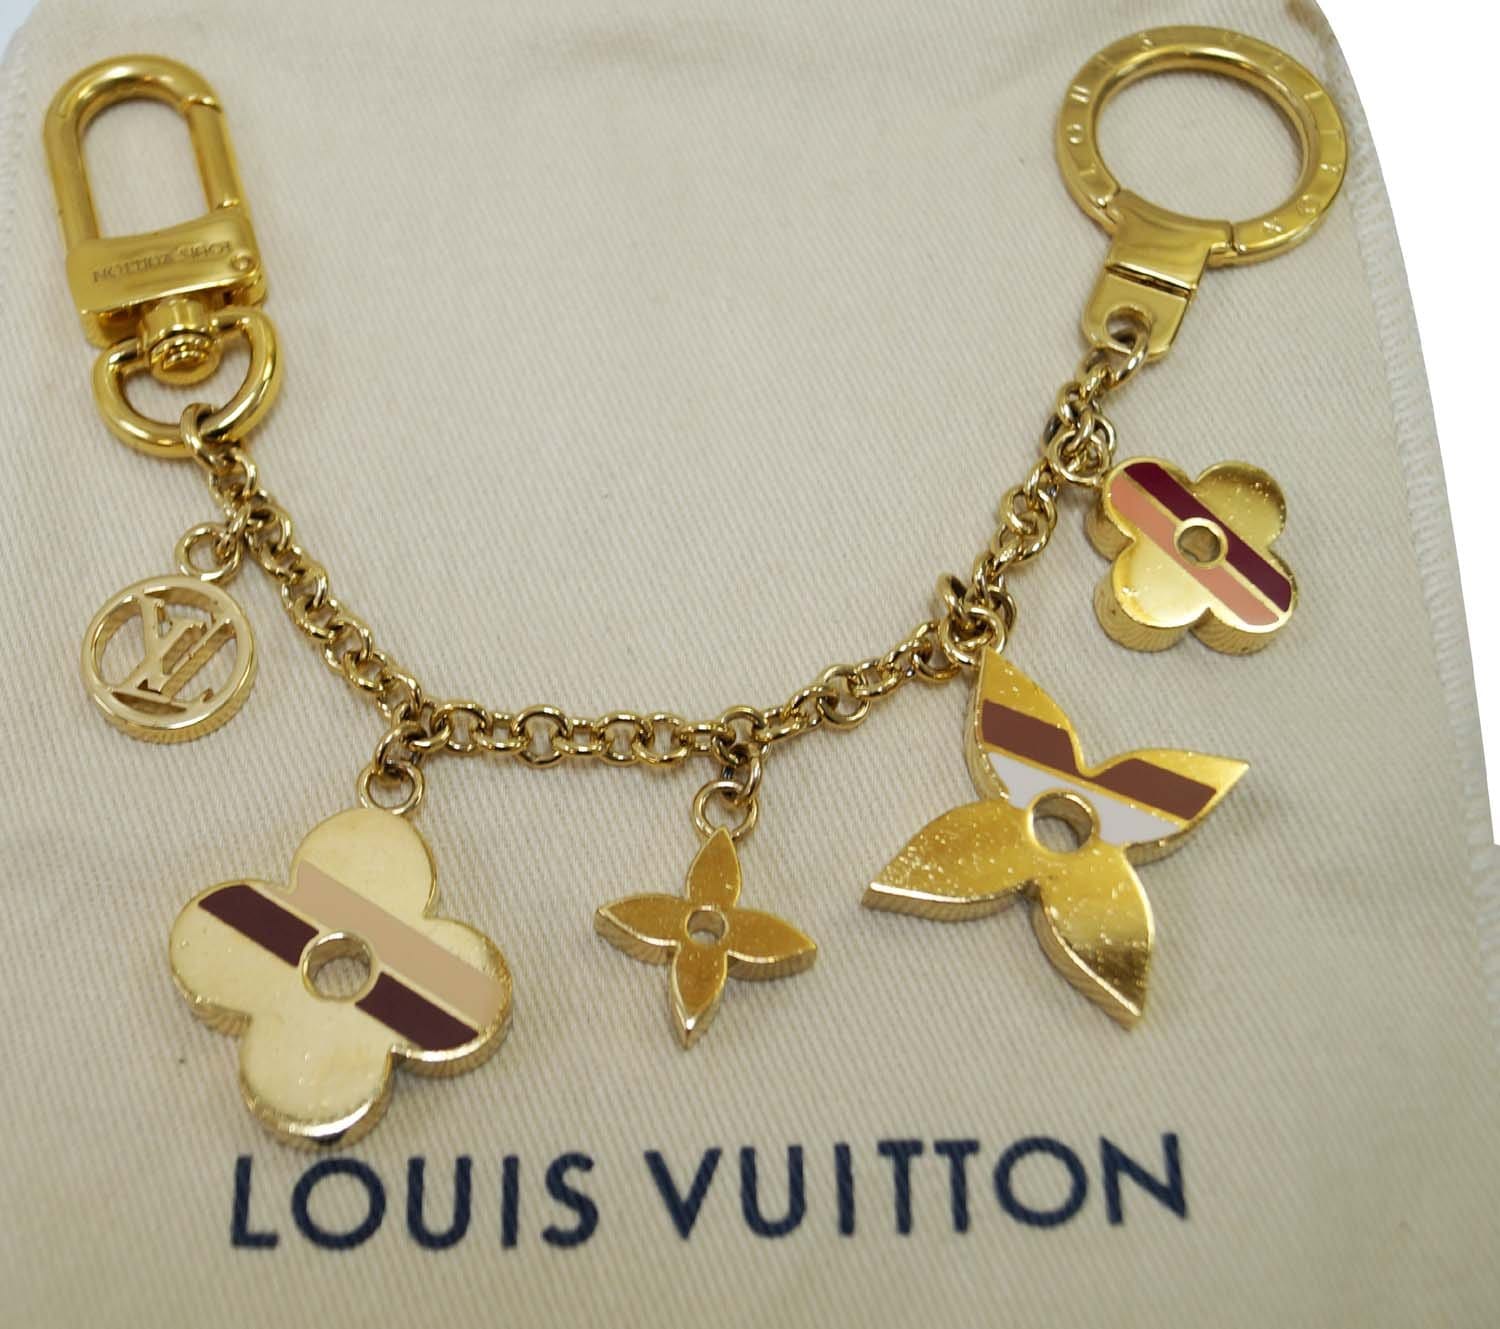 Louis Vuitton Preppy Flowers Chain Bag Charm